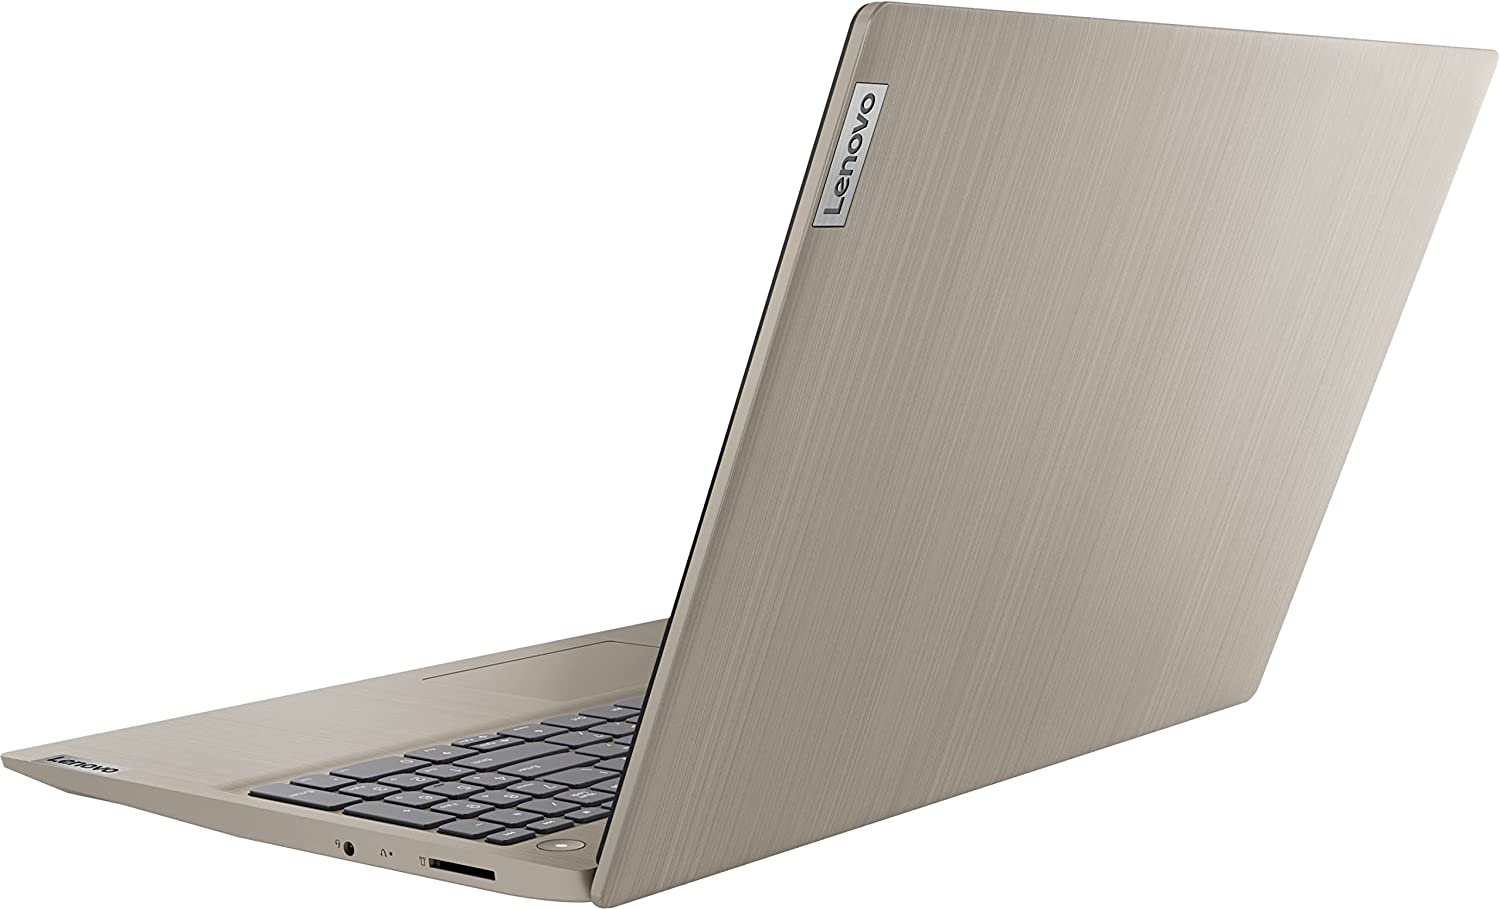 Hình ảnh Máy Tính Xách Tay Laptop Lenovo IdeaPad 3 (81X800EMUS) (Core i3-1115G4, Ram 4Gb, SSD 128GB, Intel UHD graphics, 15.6 inchFHD, Win10s Almond) - Hàng Chính Hãng